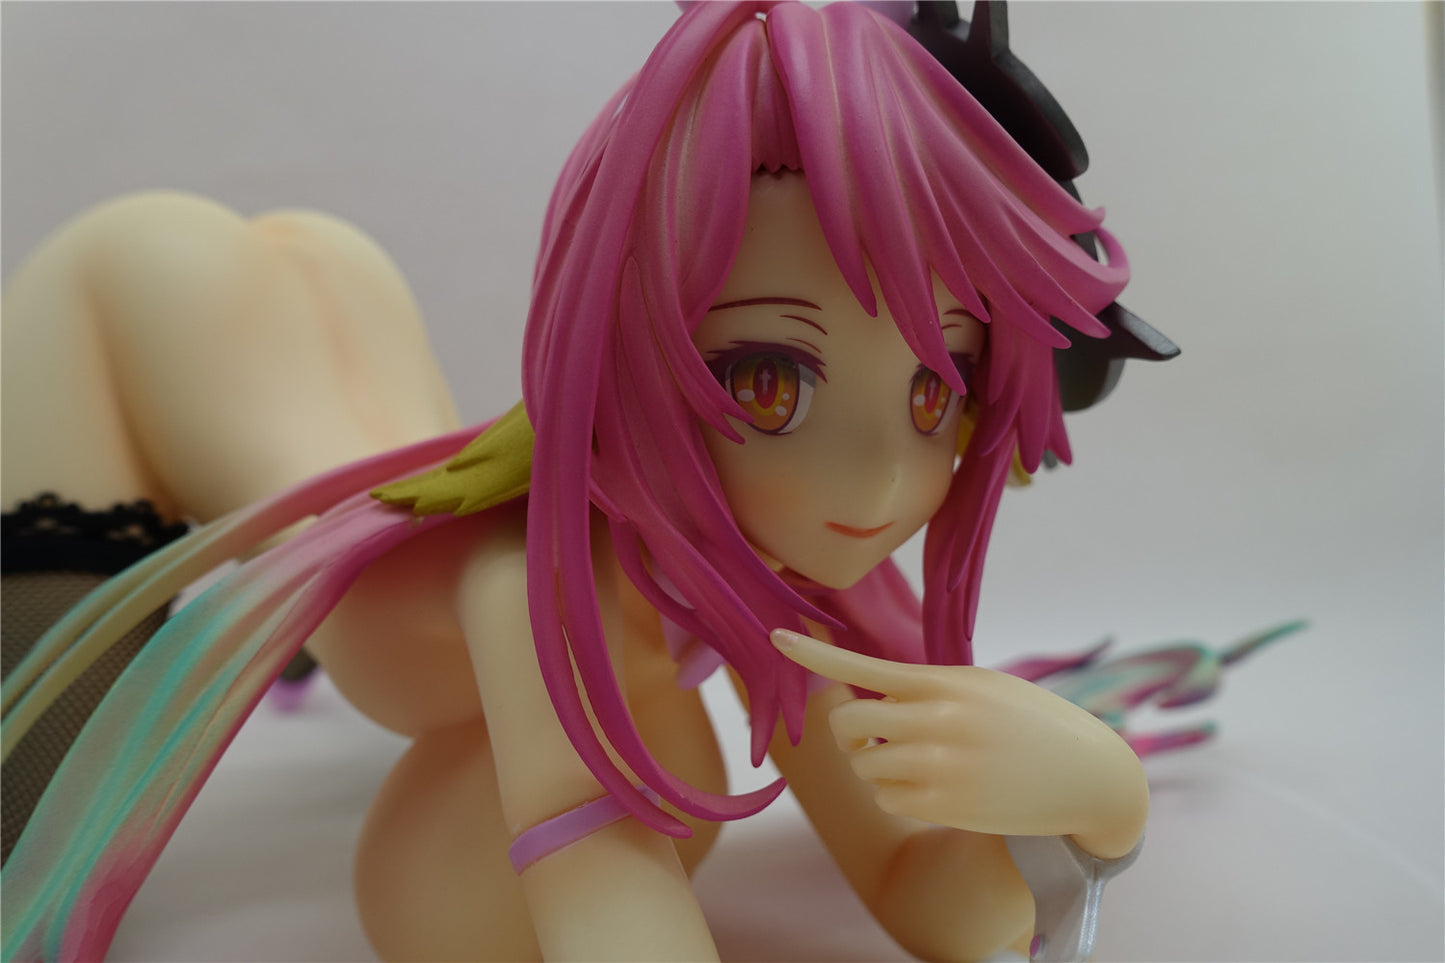 No Game No Life - Jibril bunny 1/4 naked anime girl figure collectible action figures